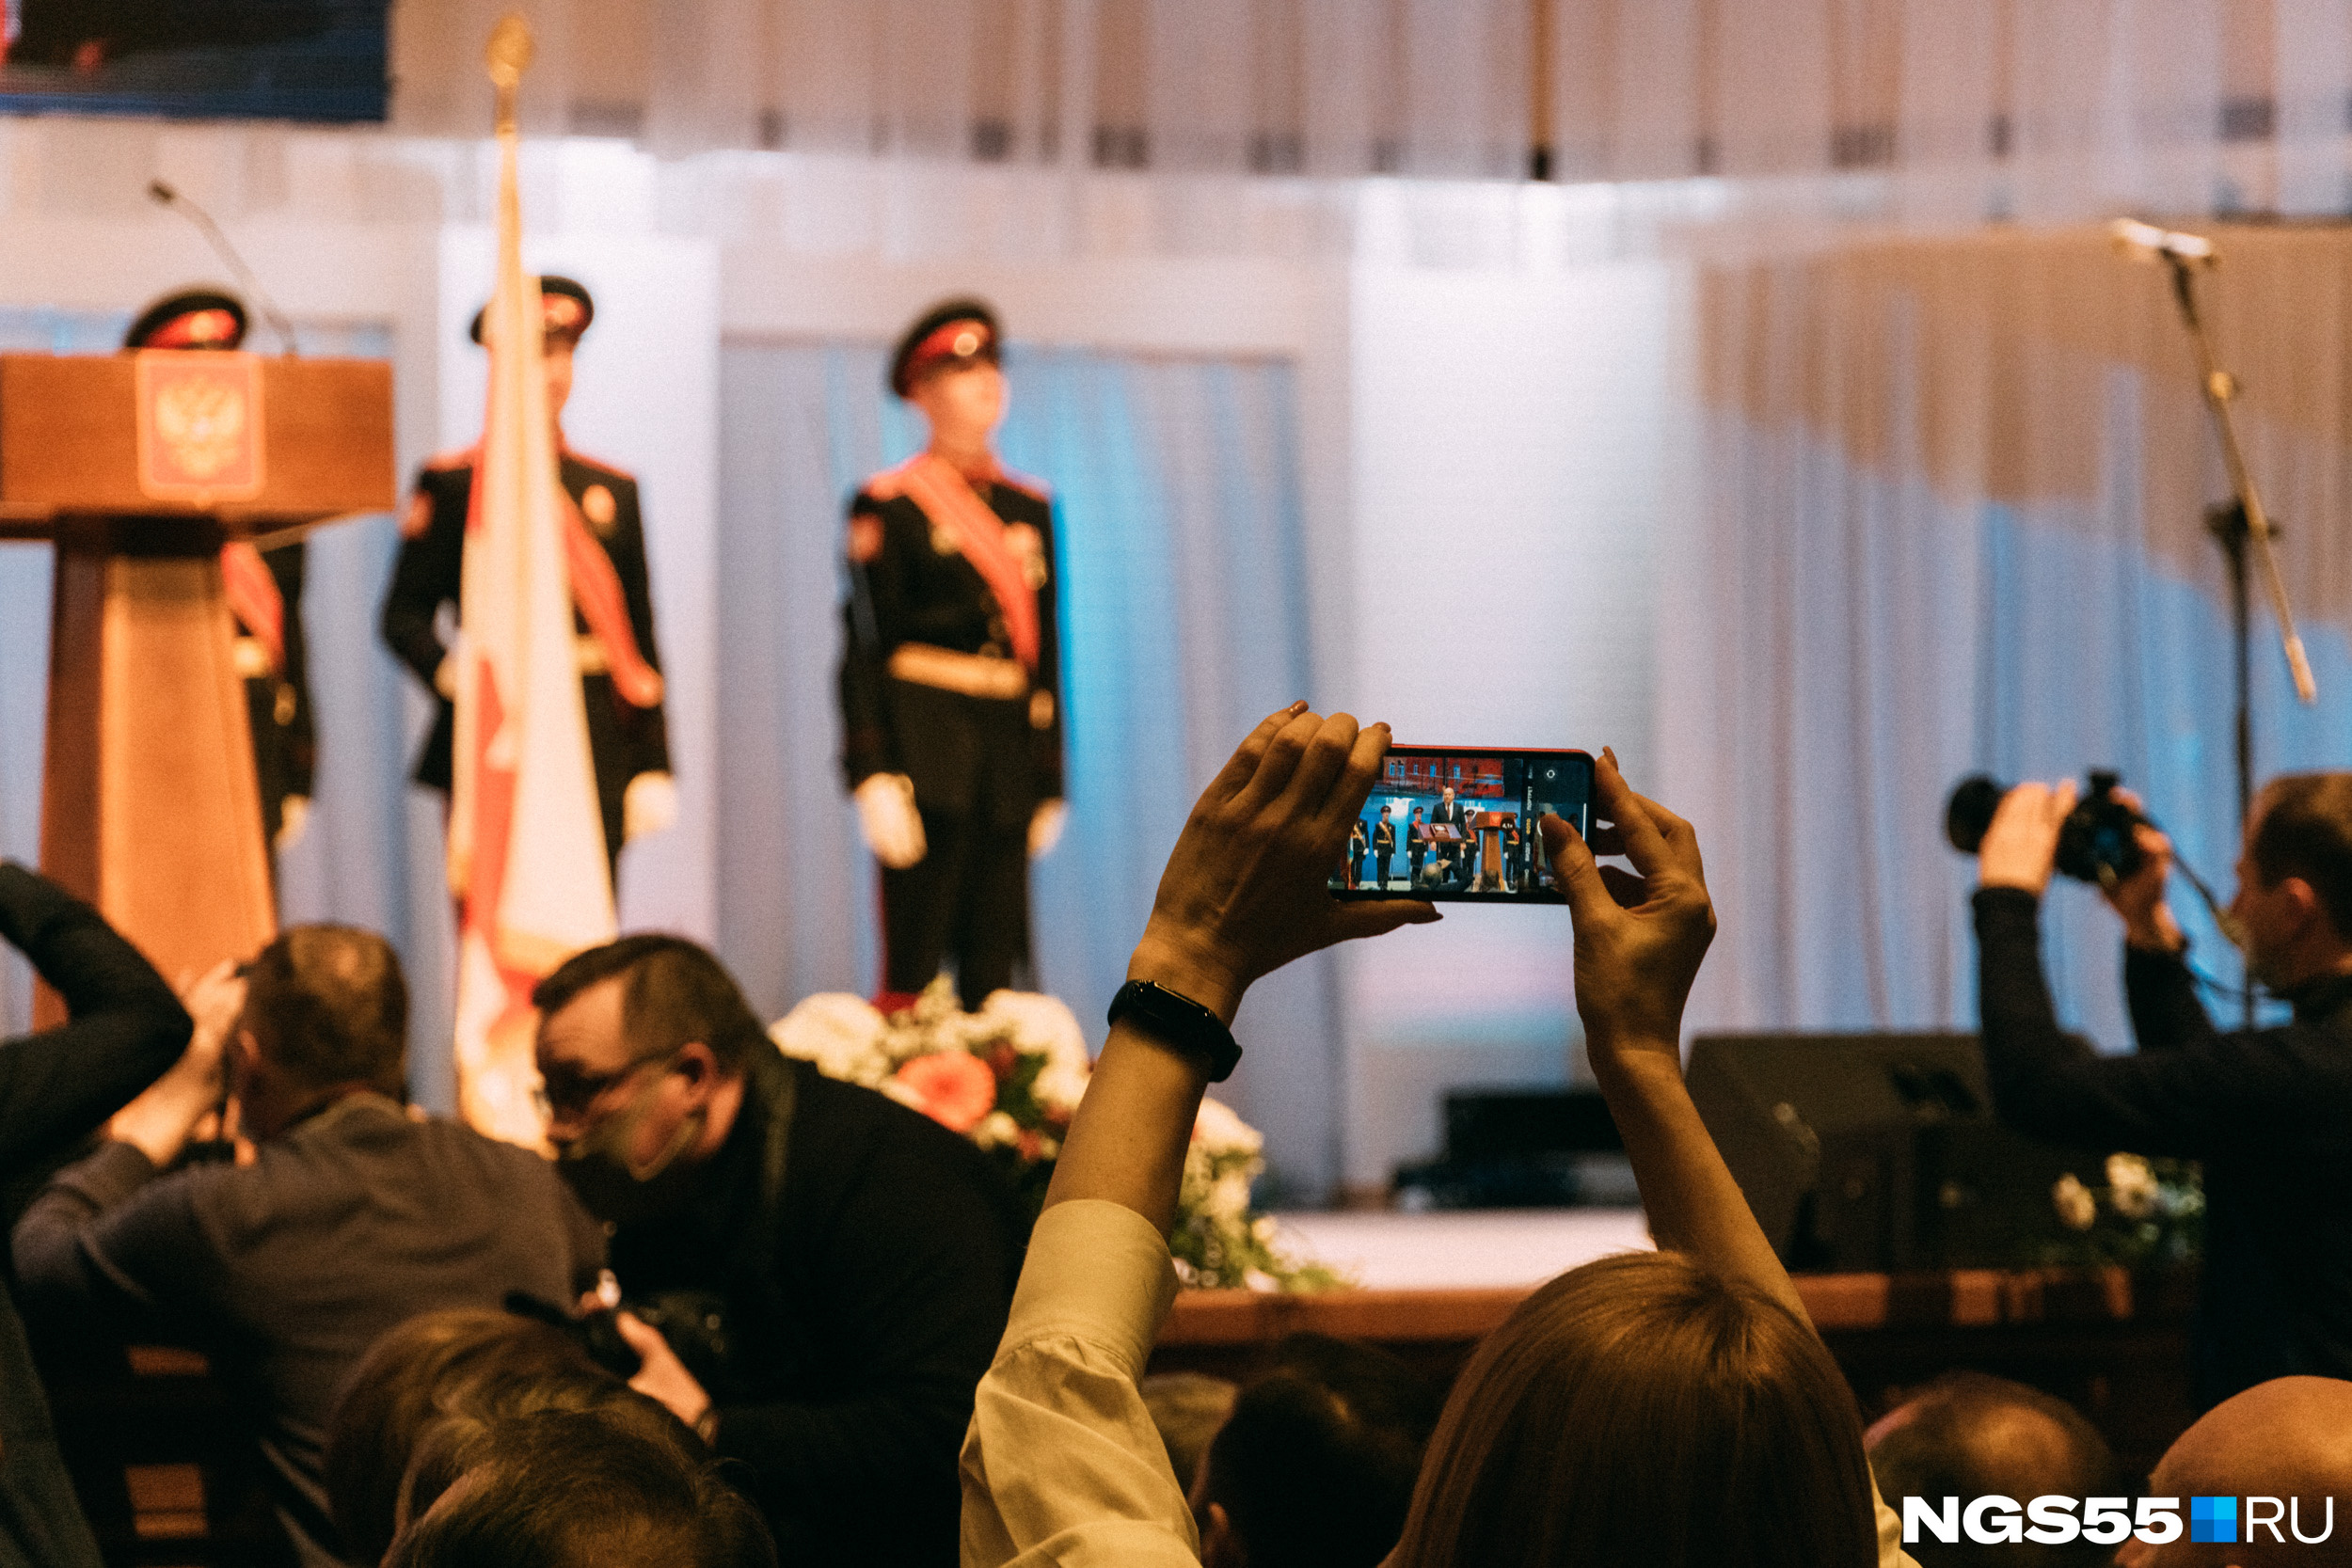 Гости стремились запечатлеть исторический момент на камеры своих телефонов